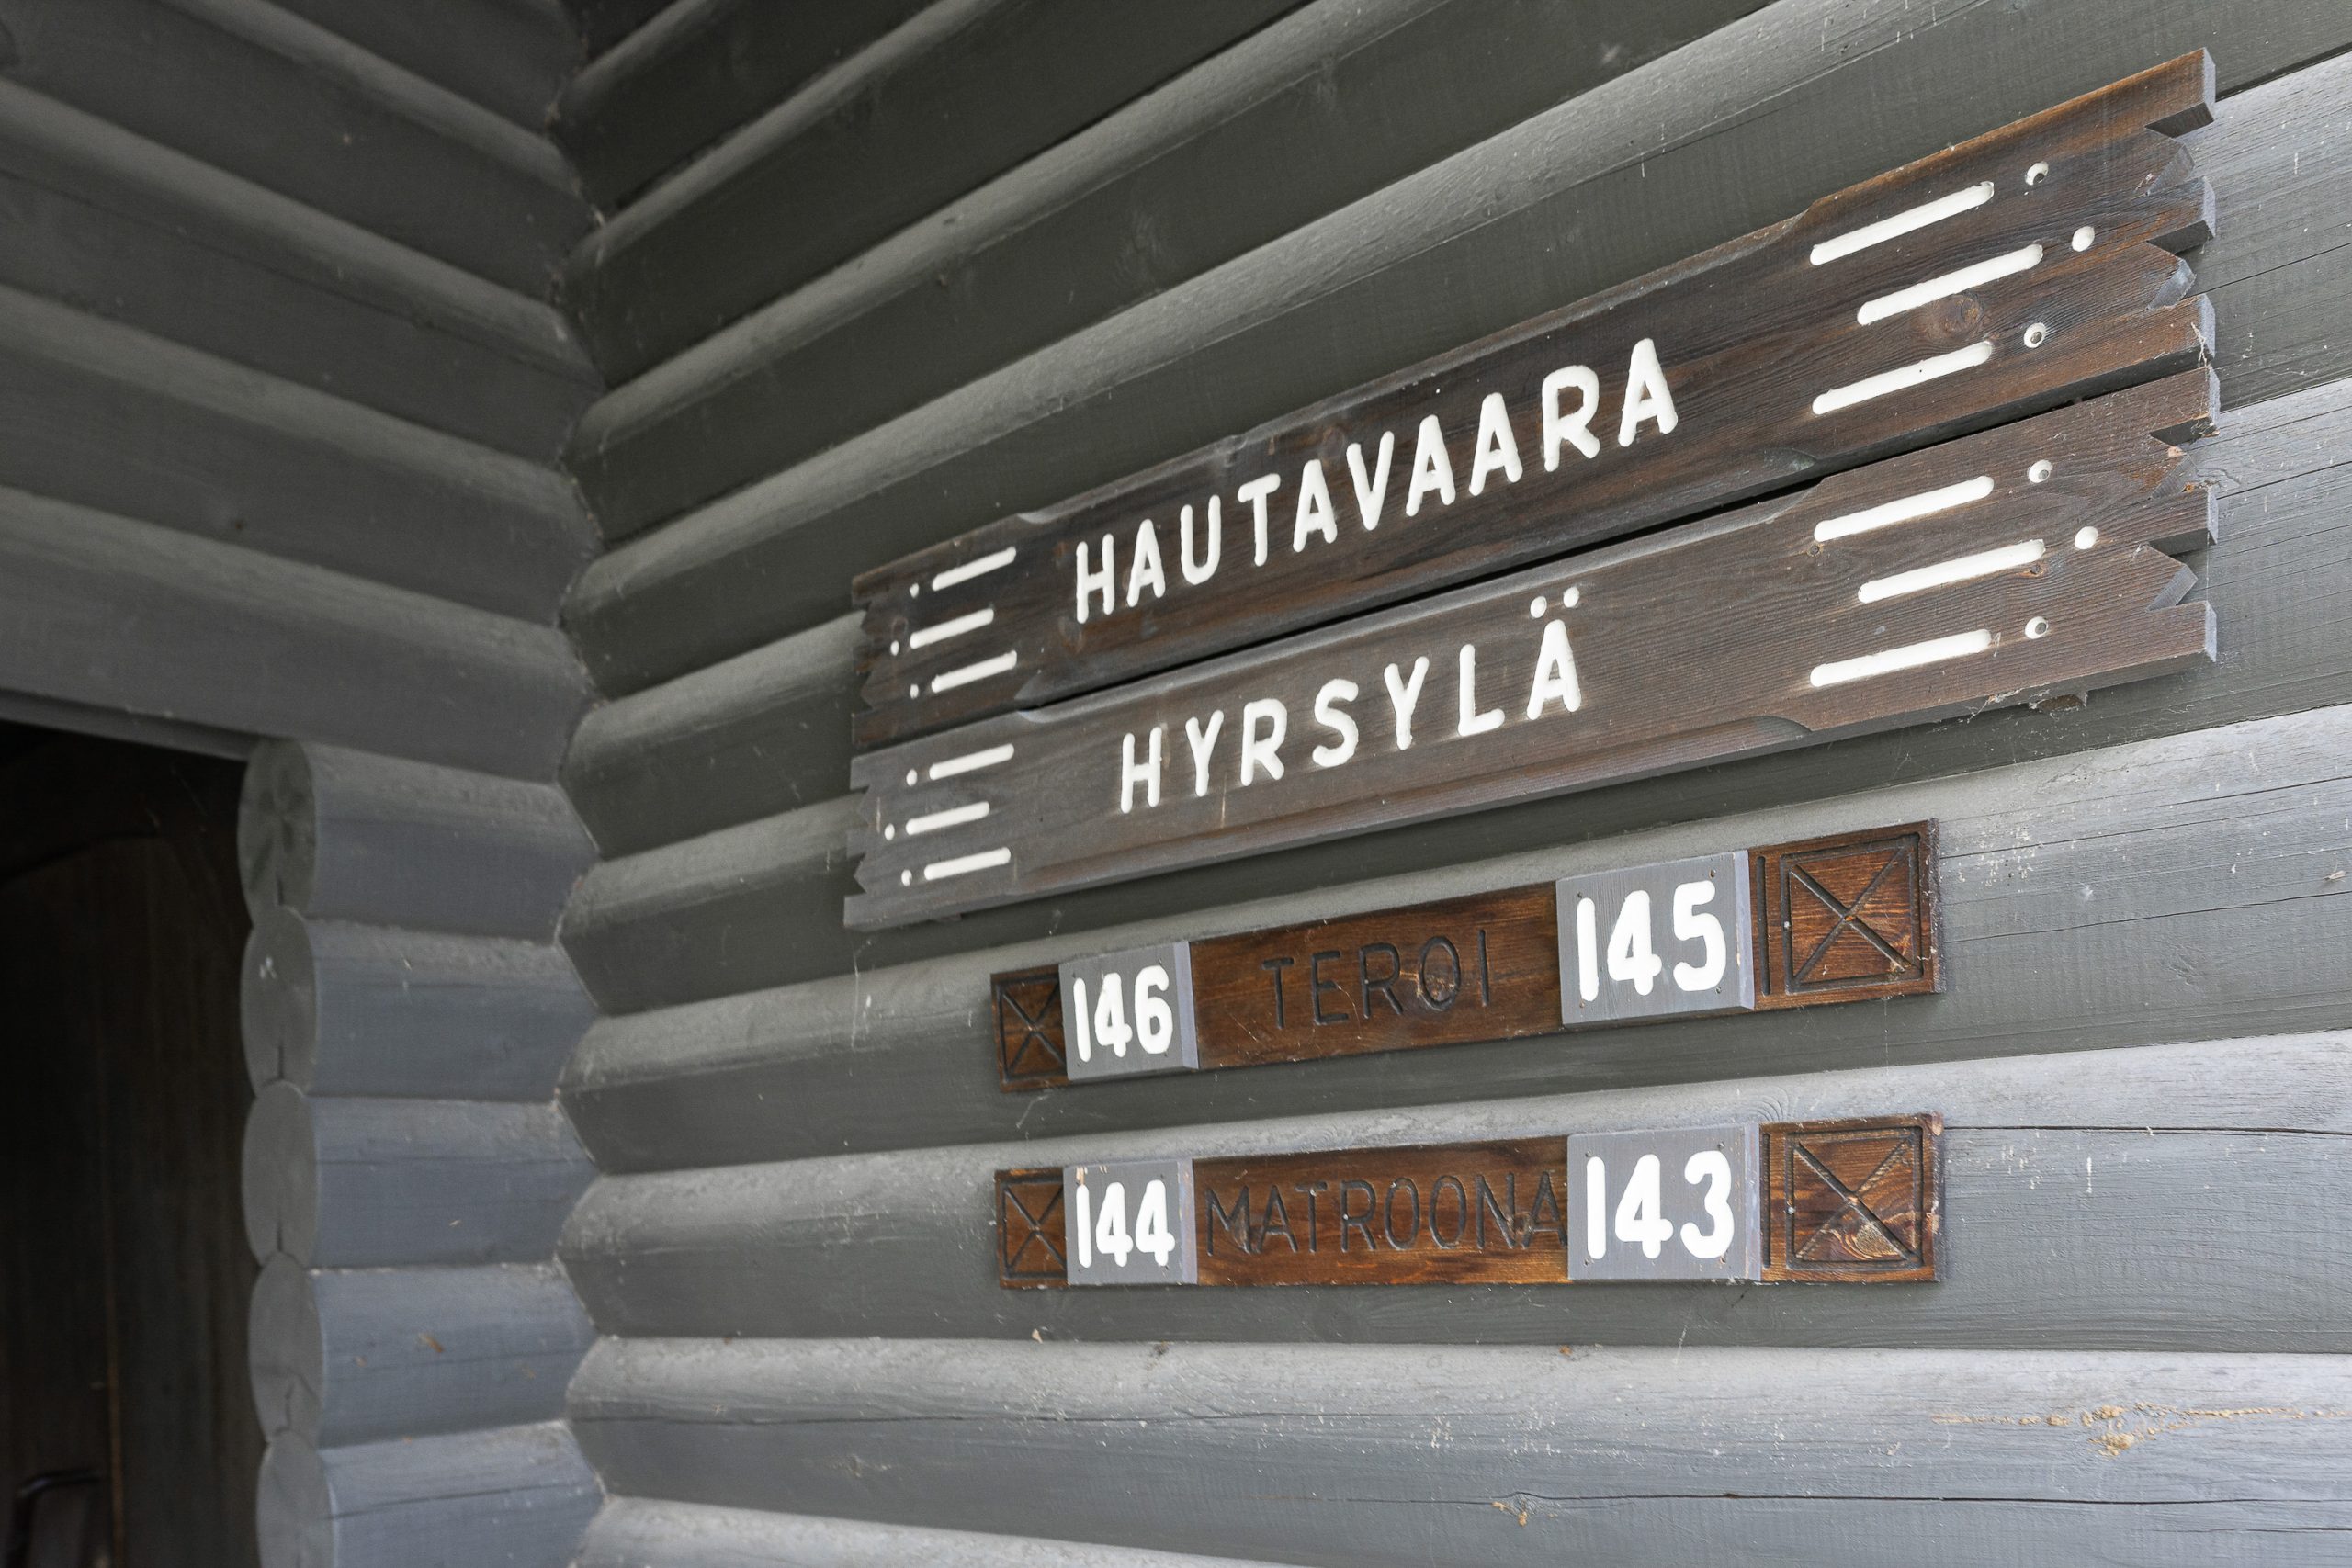 Bomba – Karjalaiskylä / Twin Hautavaara-Hyrskylä 143-146. Kesäkuu 2021. Wild Nordic Finland @wildnordicfinland